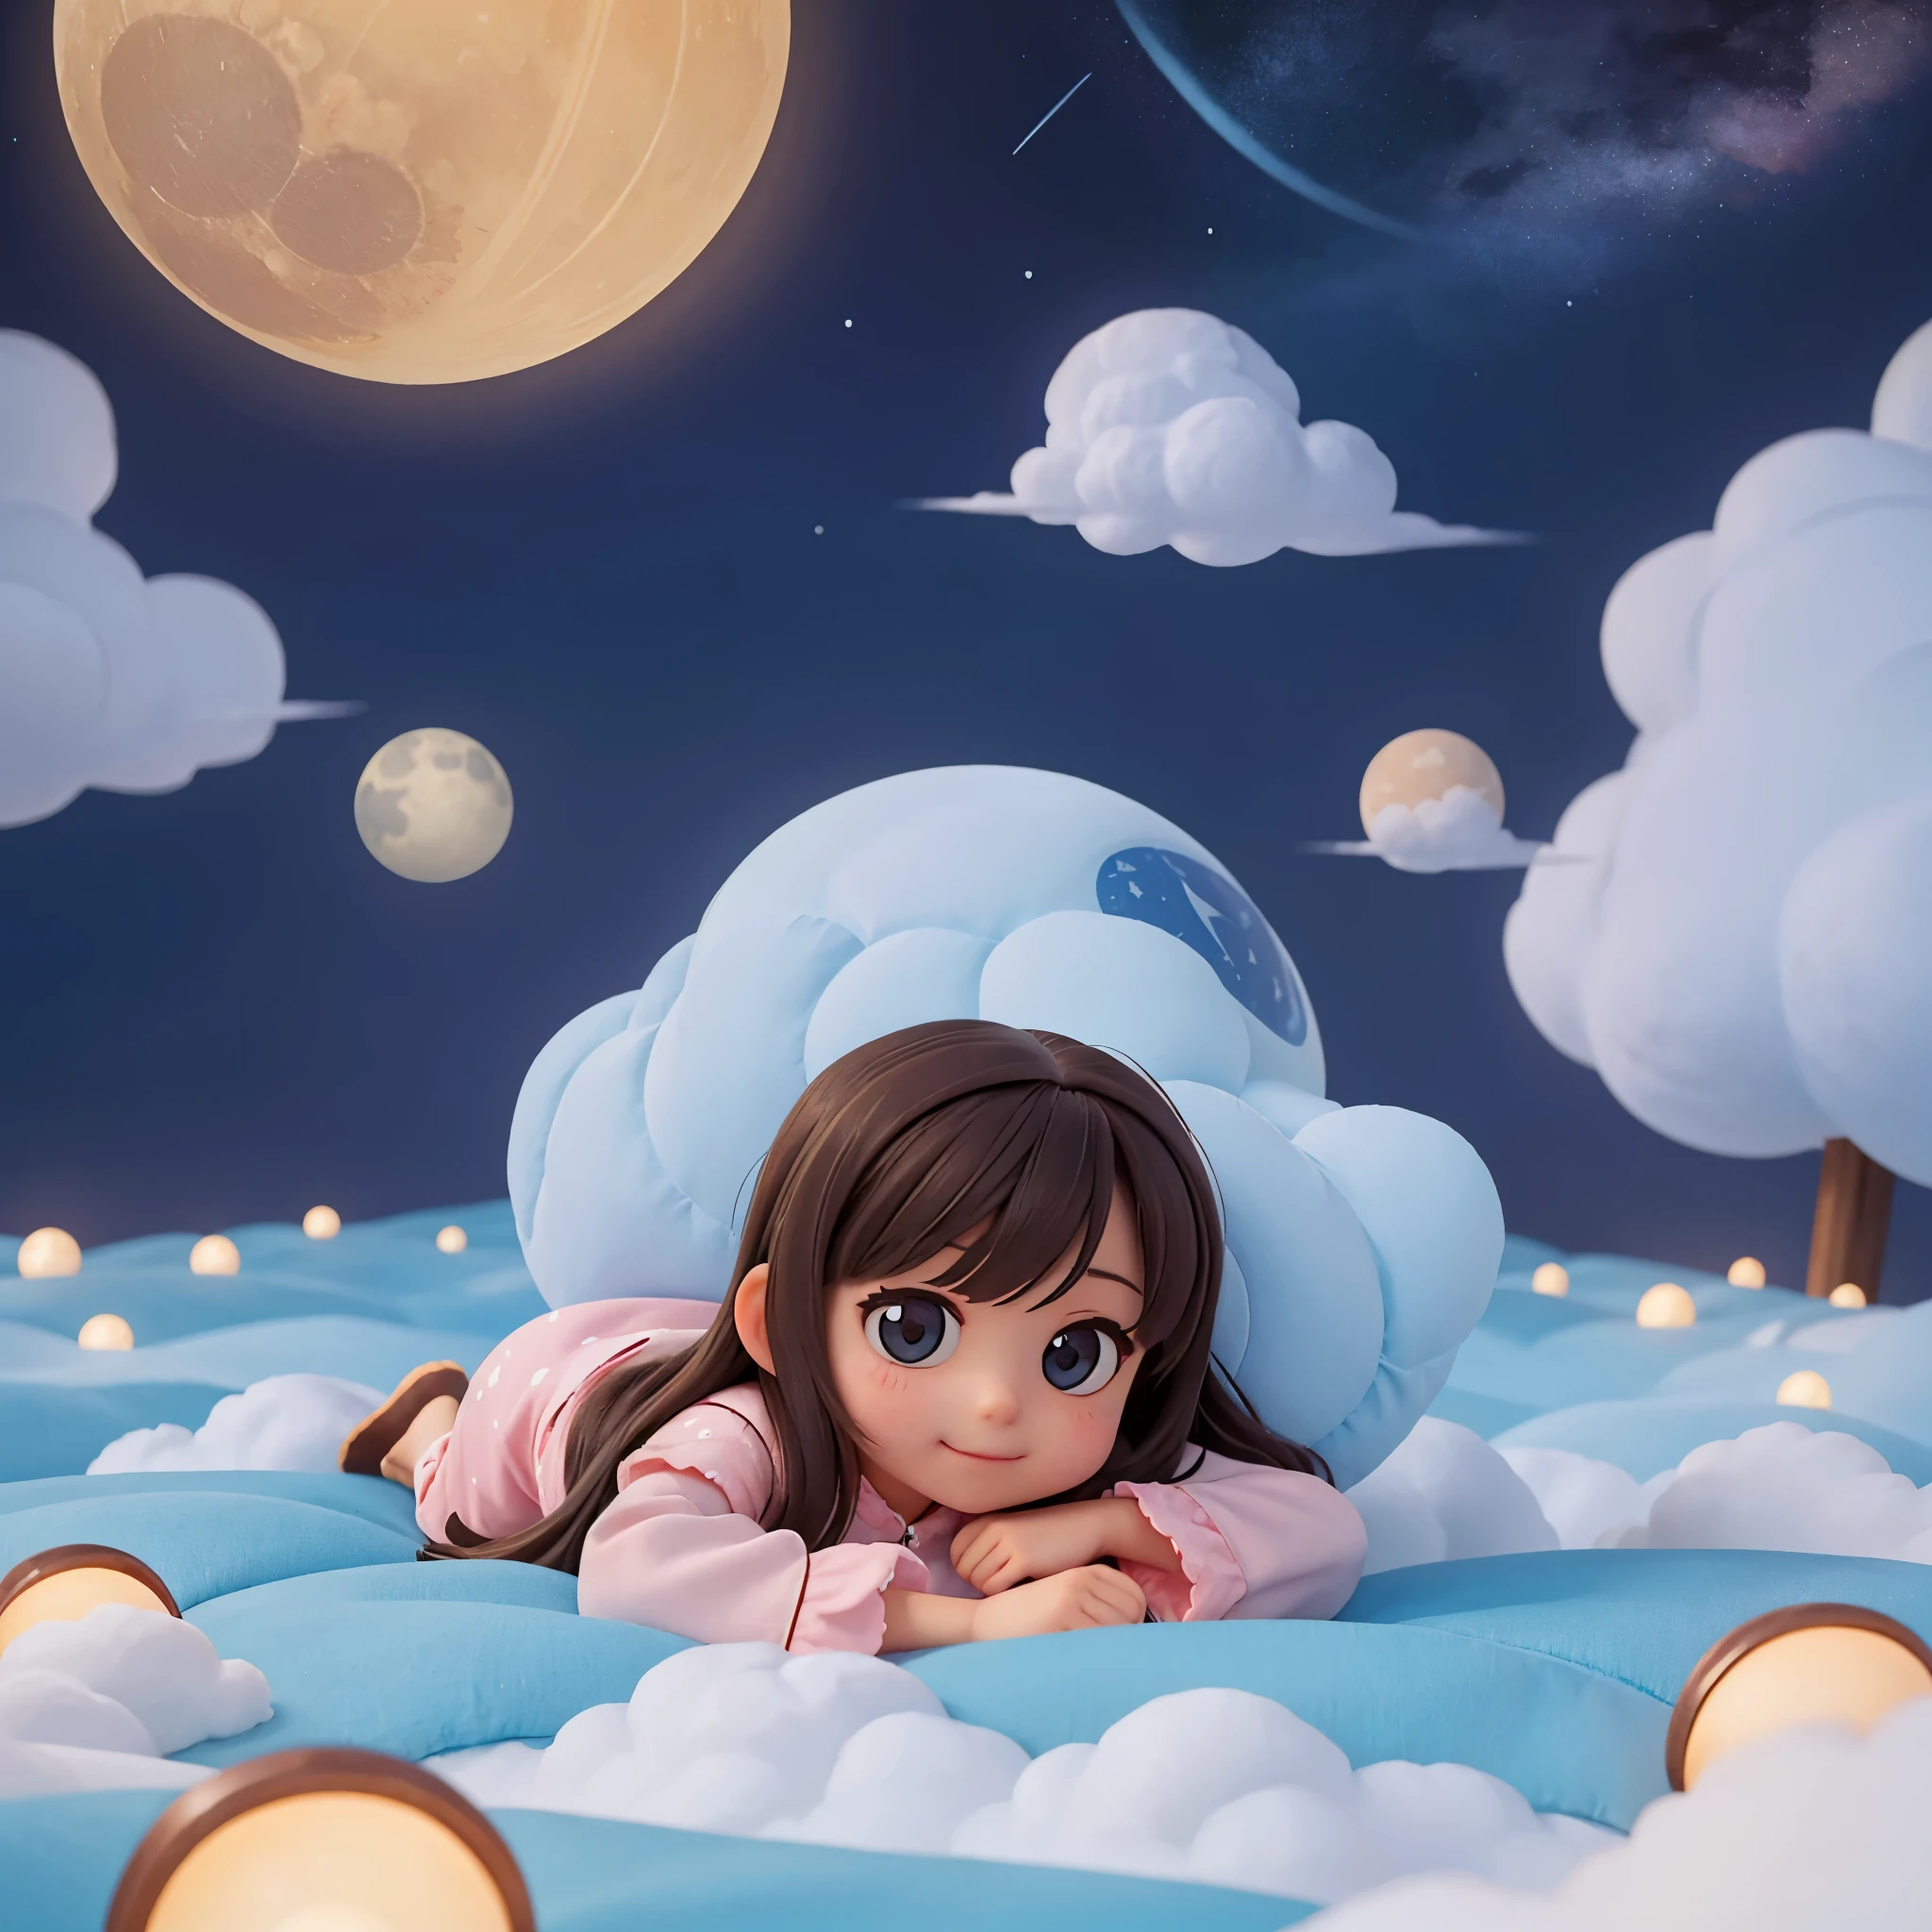 一個可愛的 ，穿著可愛的睡衣，蓋著被子，躺在云端，快樂又舒服，背景是地球，晚上，被星星和雲彩包圍，有月亮，溫馨舒適的氛圍，